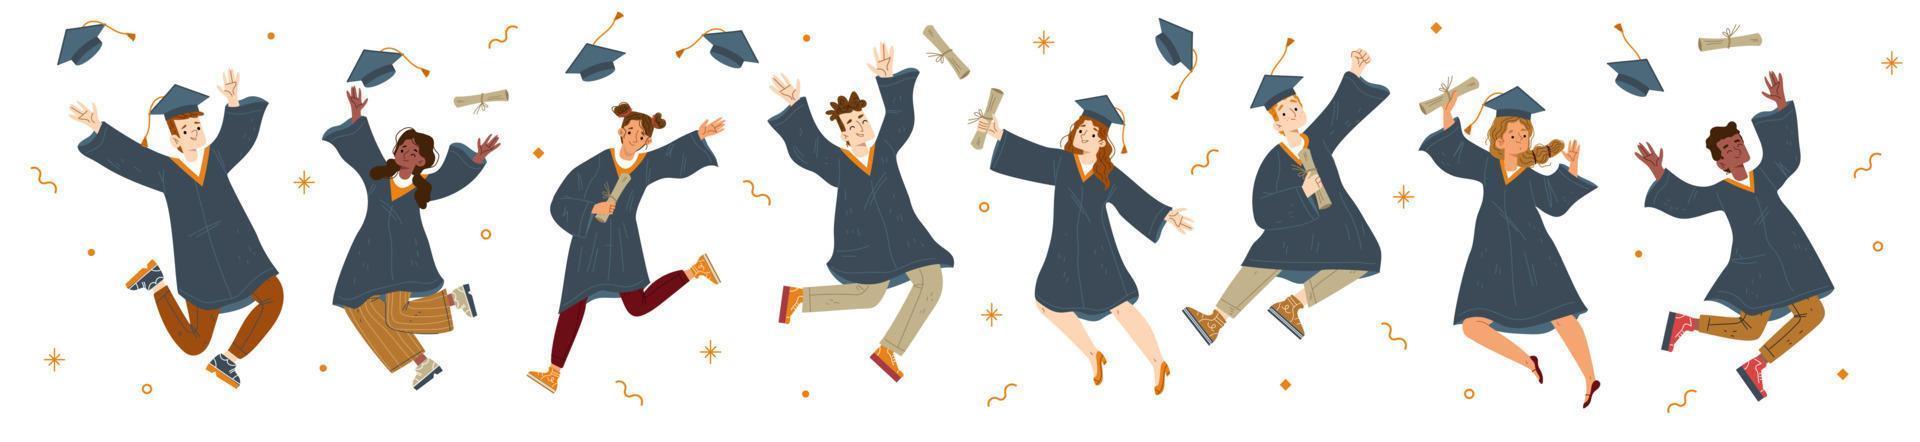 salto de estudiante graduado, personajes en toga y gorra vector